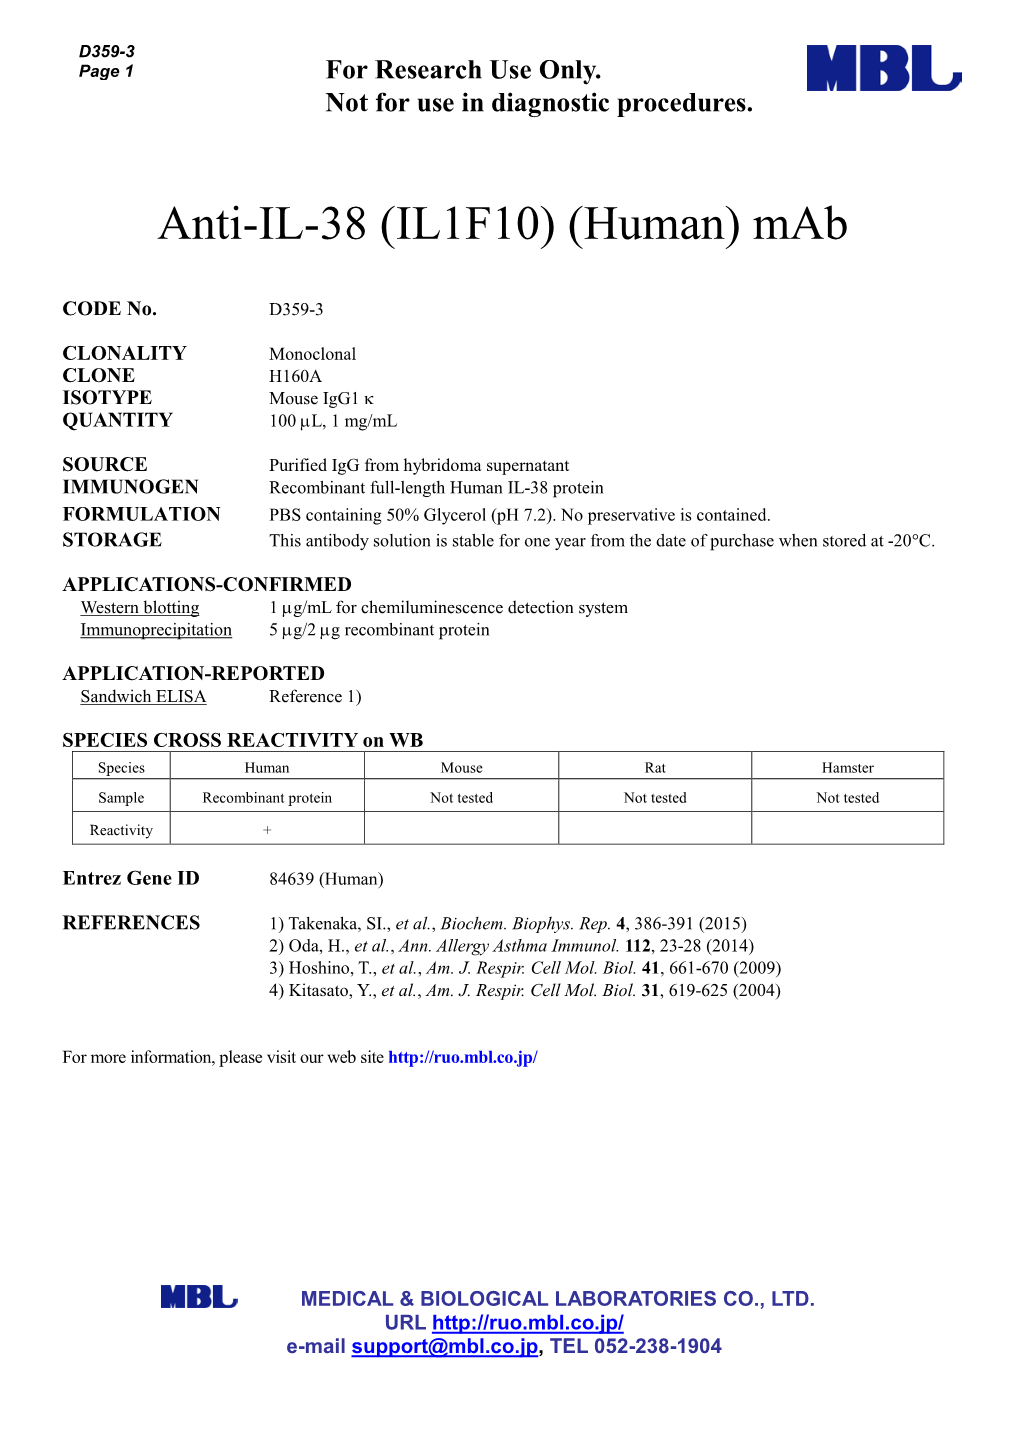 Anti-IL-38 (IL1F10) (Human) Mab